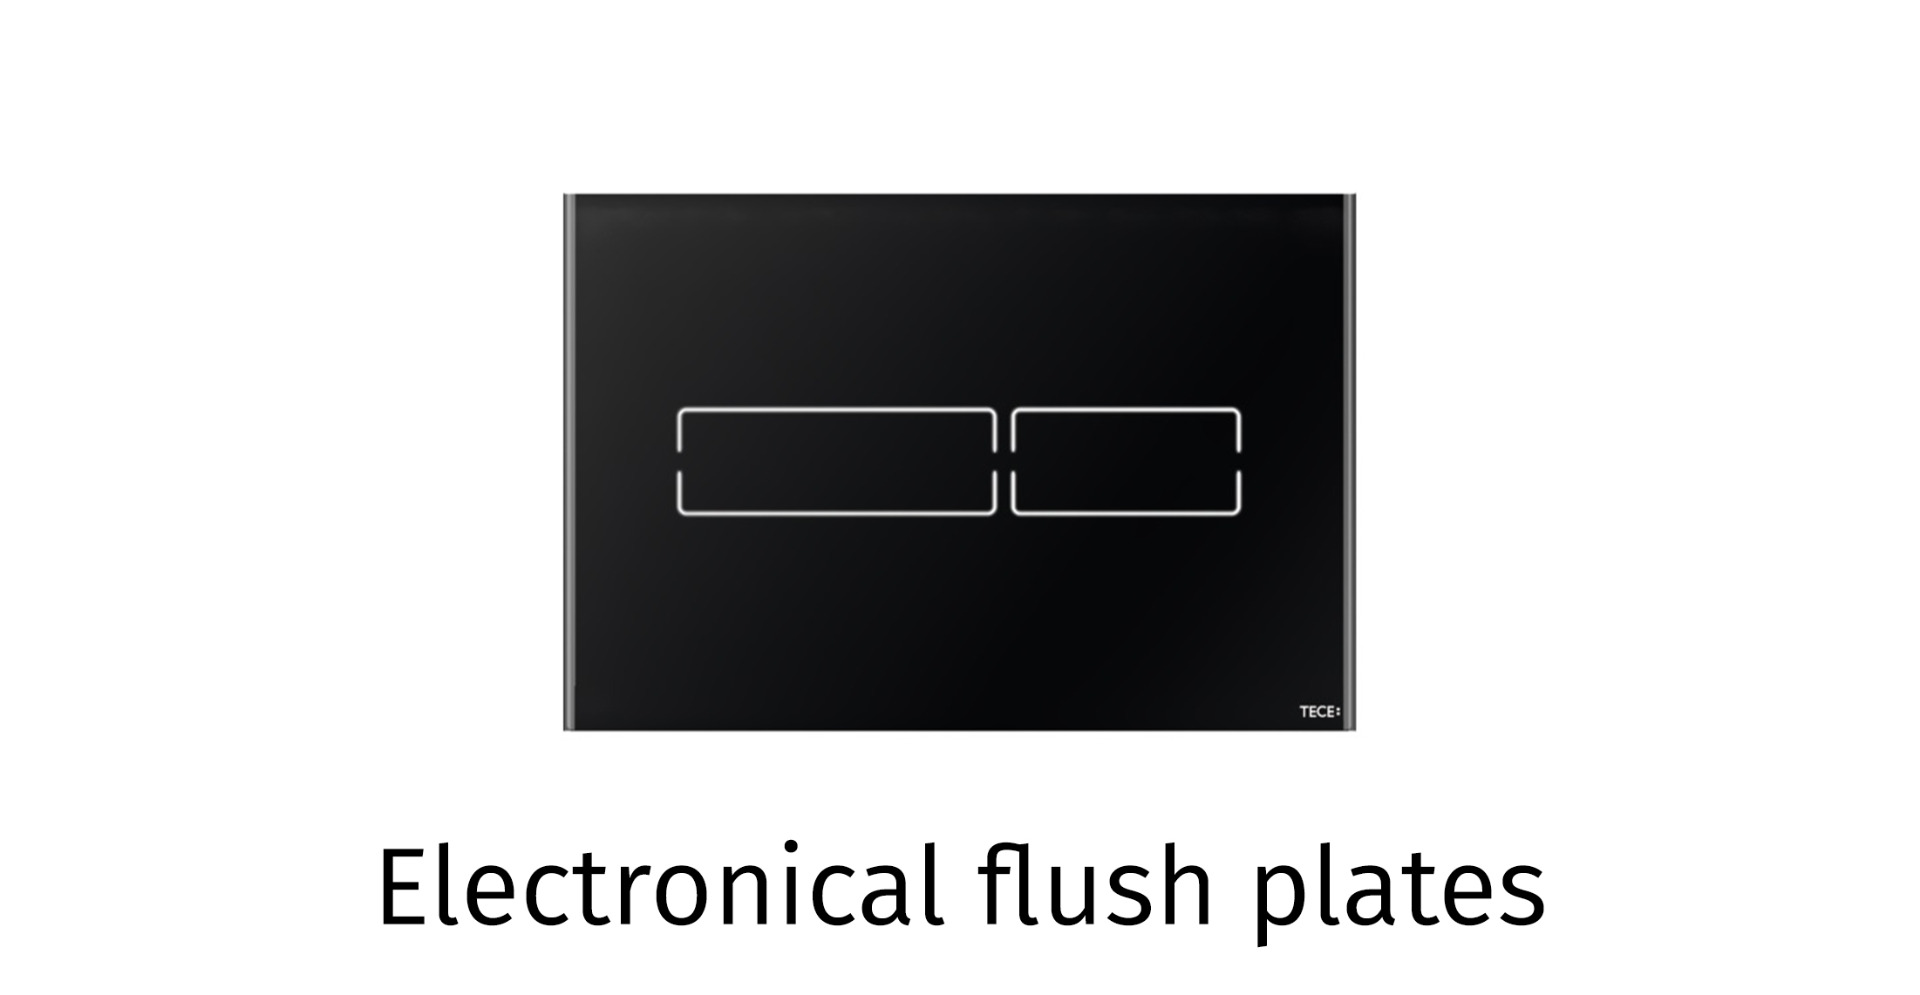 Electronical flush plates